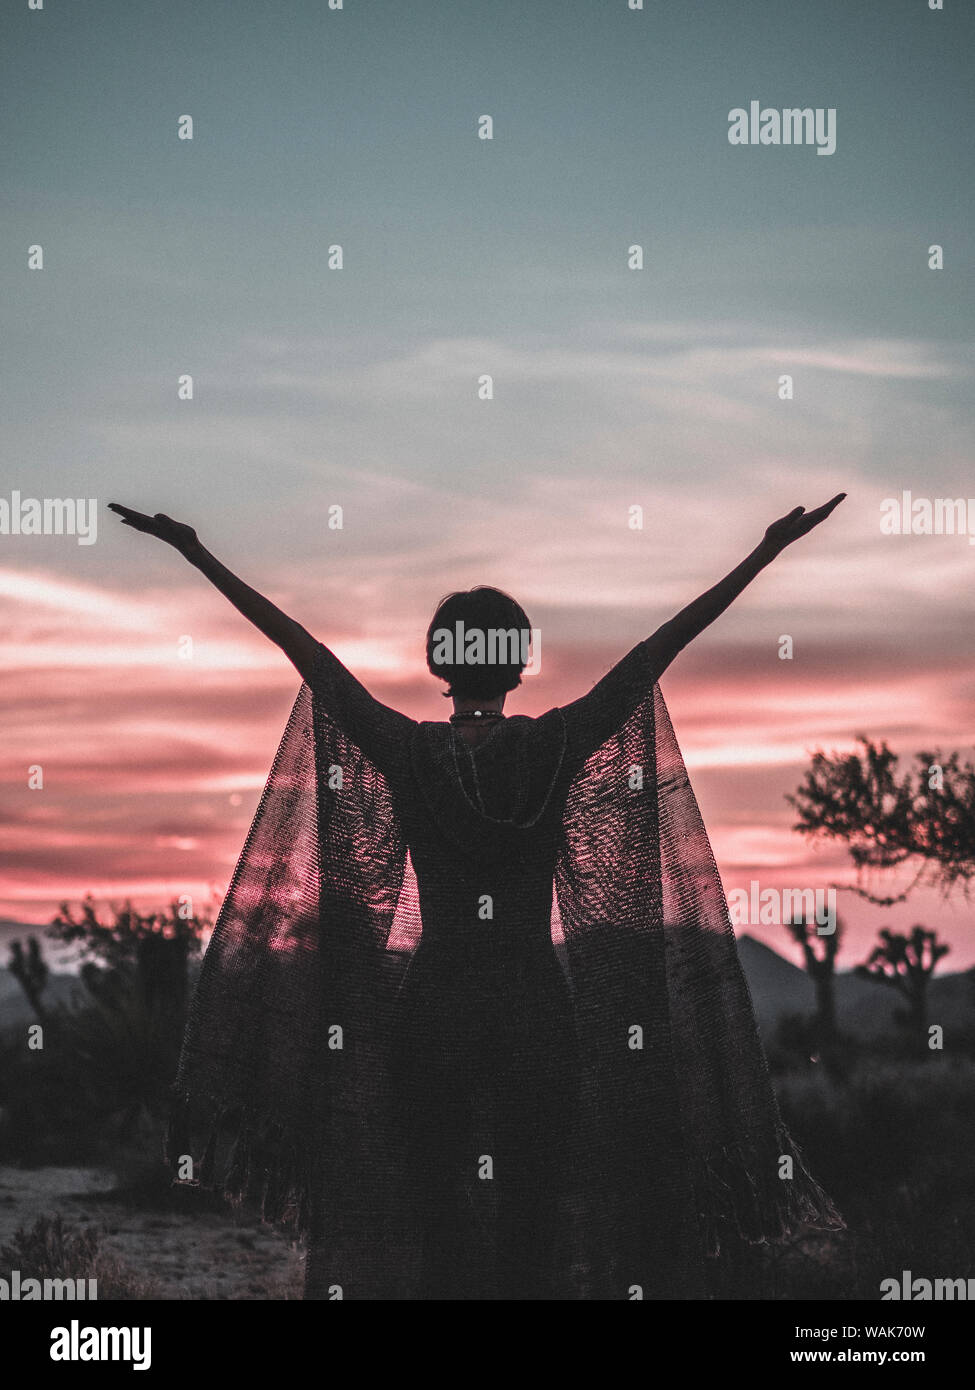 États-unis, Californie, Joshua Tree National Park. Silhouette femme soulevant les bras en avant le coucher du soleil du désert. Banque D'Images